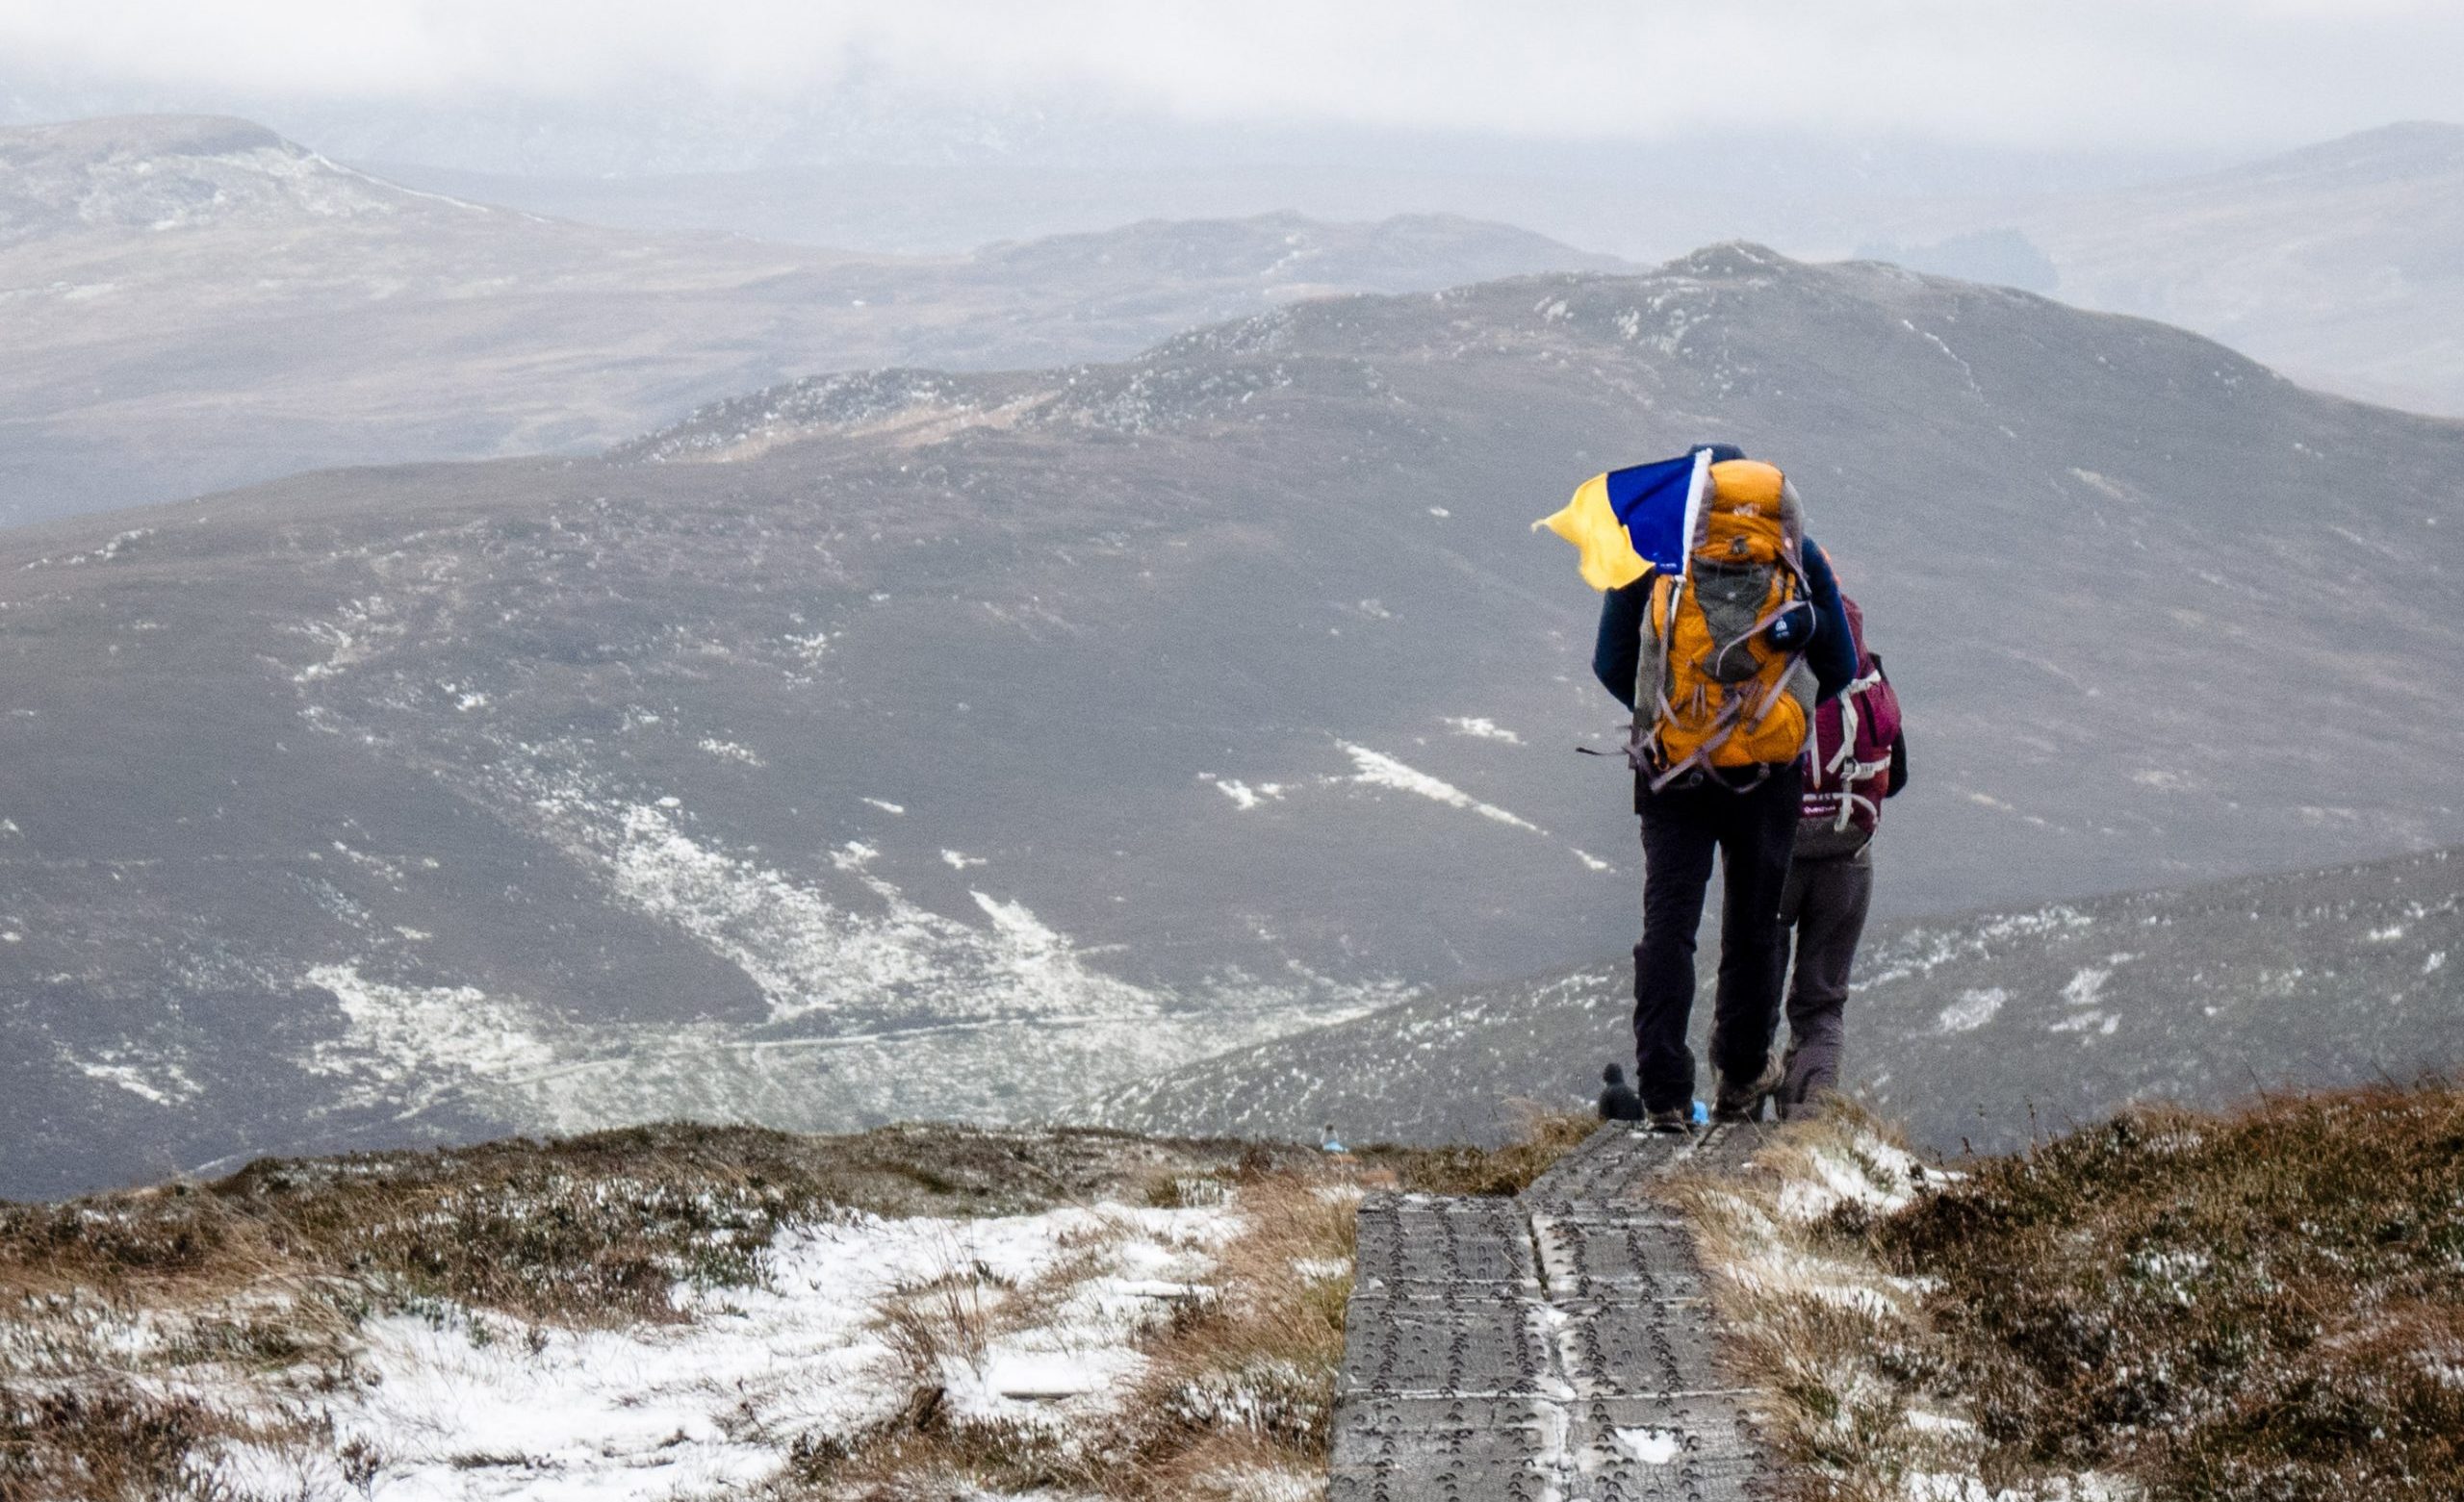 Winterwanderung in den Bergen von Wicklow in Irland